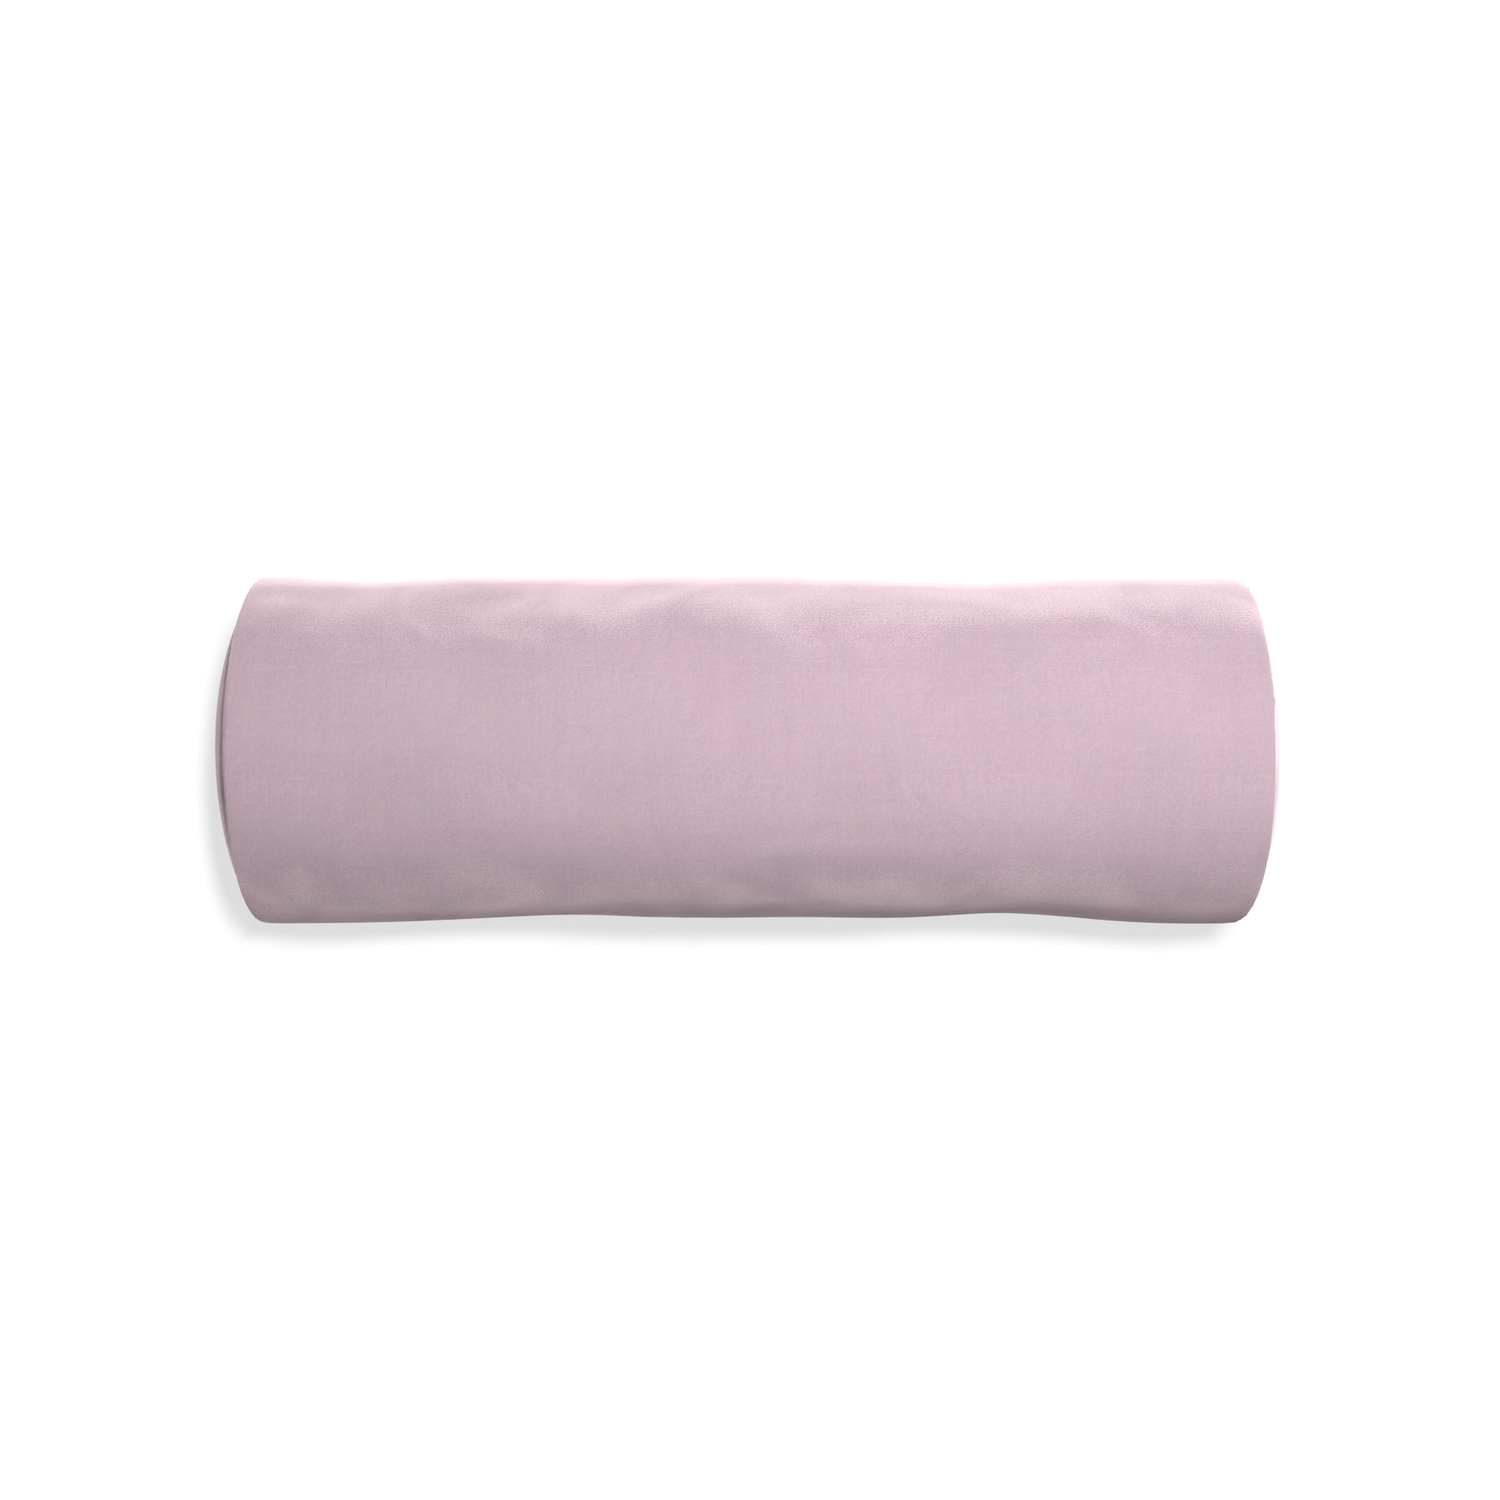 Bolster lilac velvet custom pillow with none on white background